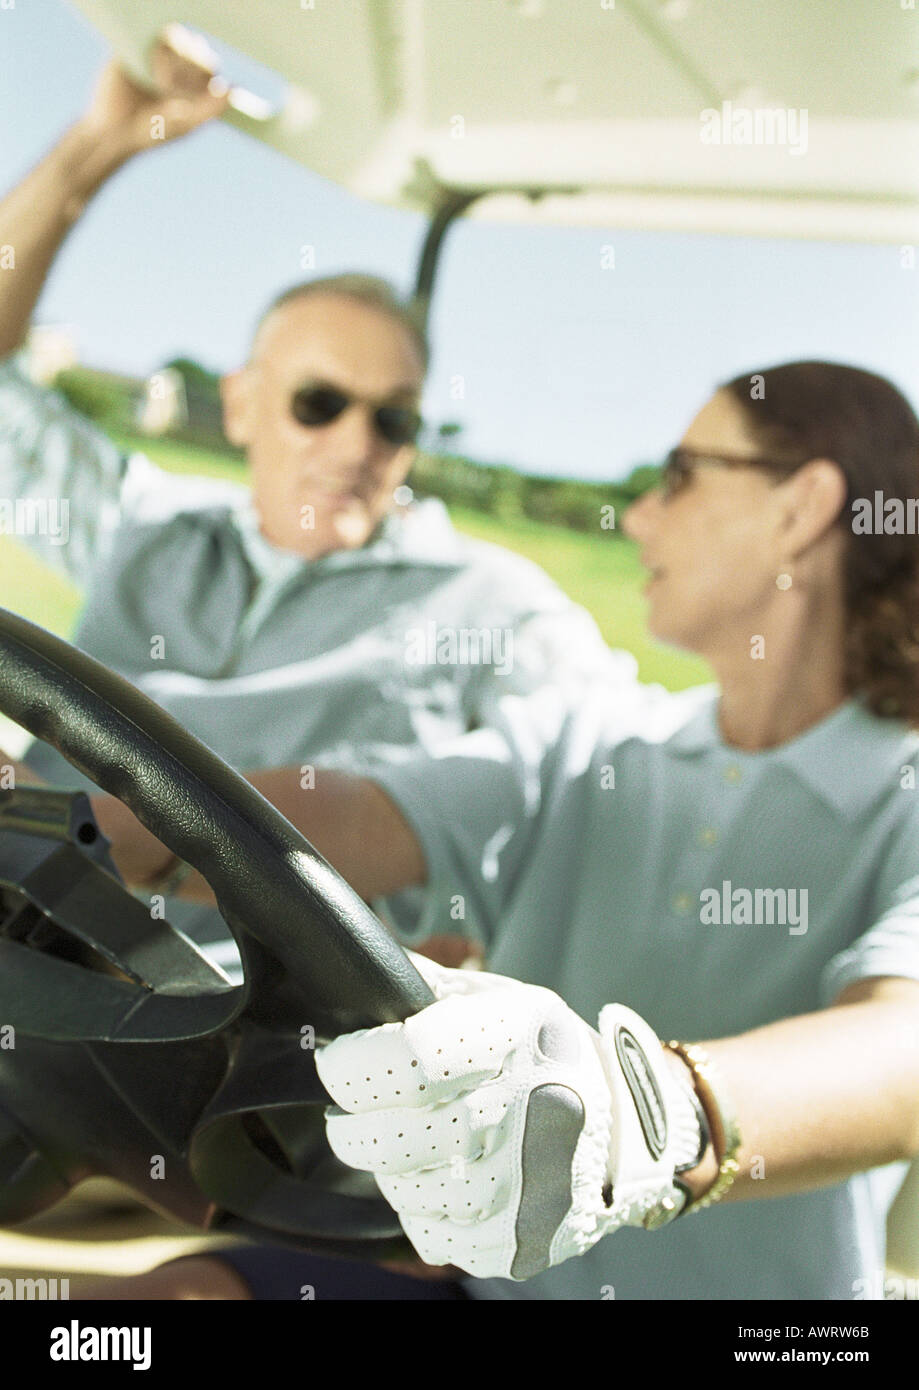 Mann und Frau im Golf-Cart, Nahaufnahme, Fokus auf Seite Reifen und Lenkrad im Vordergrund Stockfoto